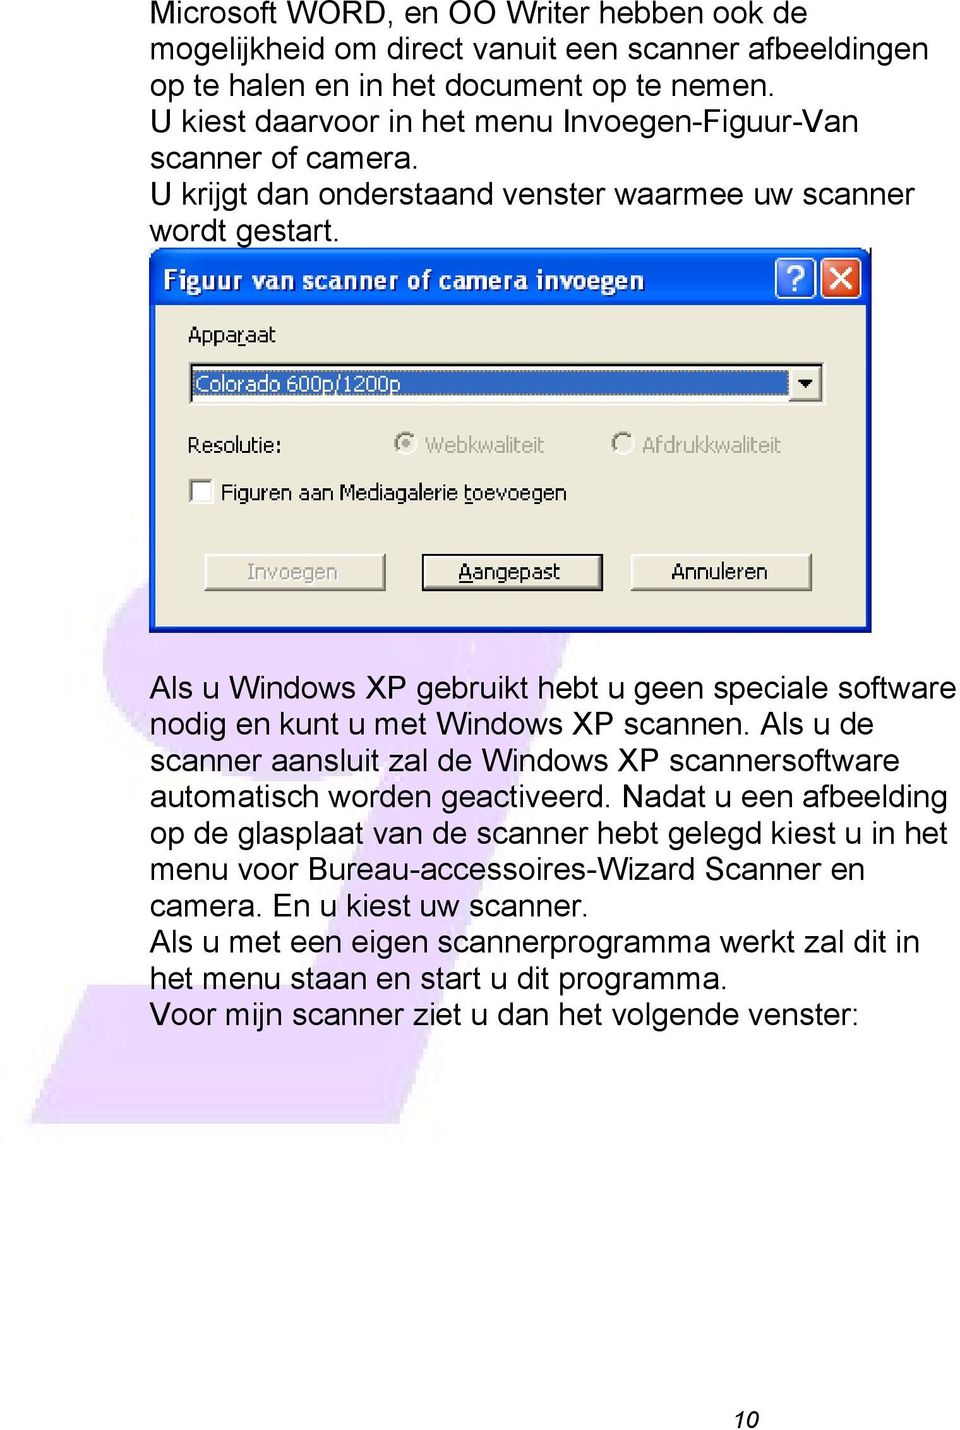 Als u Windows XP gebruikt hebt u geen speciale software nodig en kunt u met Windows XP scannen. Als u de scanner aansluit zal de Windows XP scannersoftware automatisch worden geactiveerd.